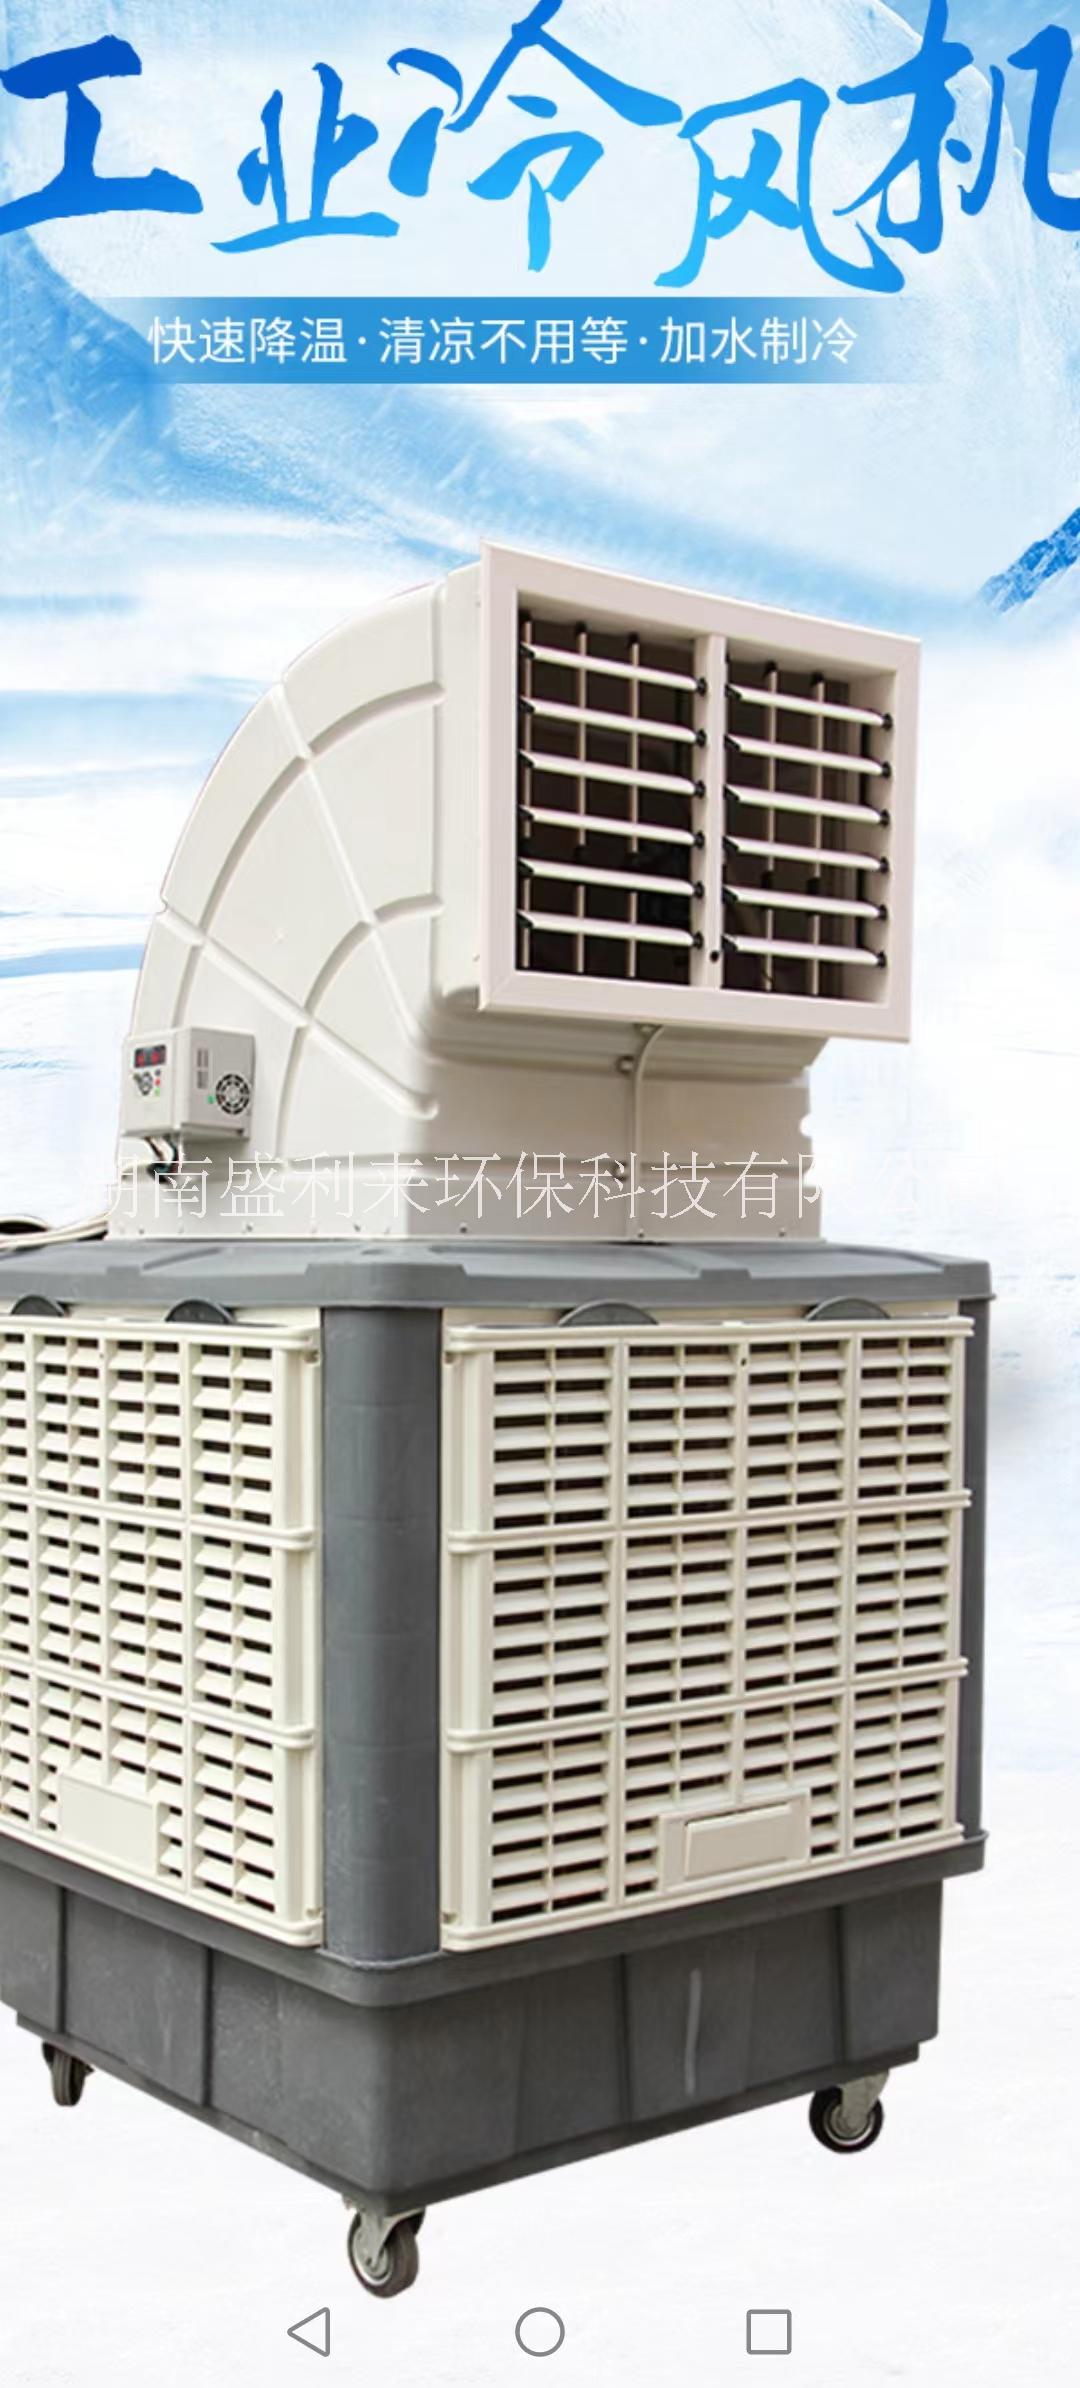 移动式环保空调/蒸发式水冷空调 移动式环保空调/蒸发式水冷空调130